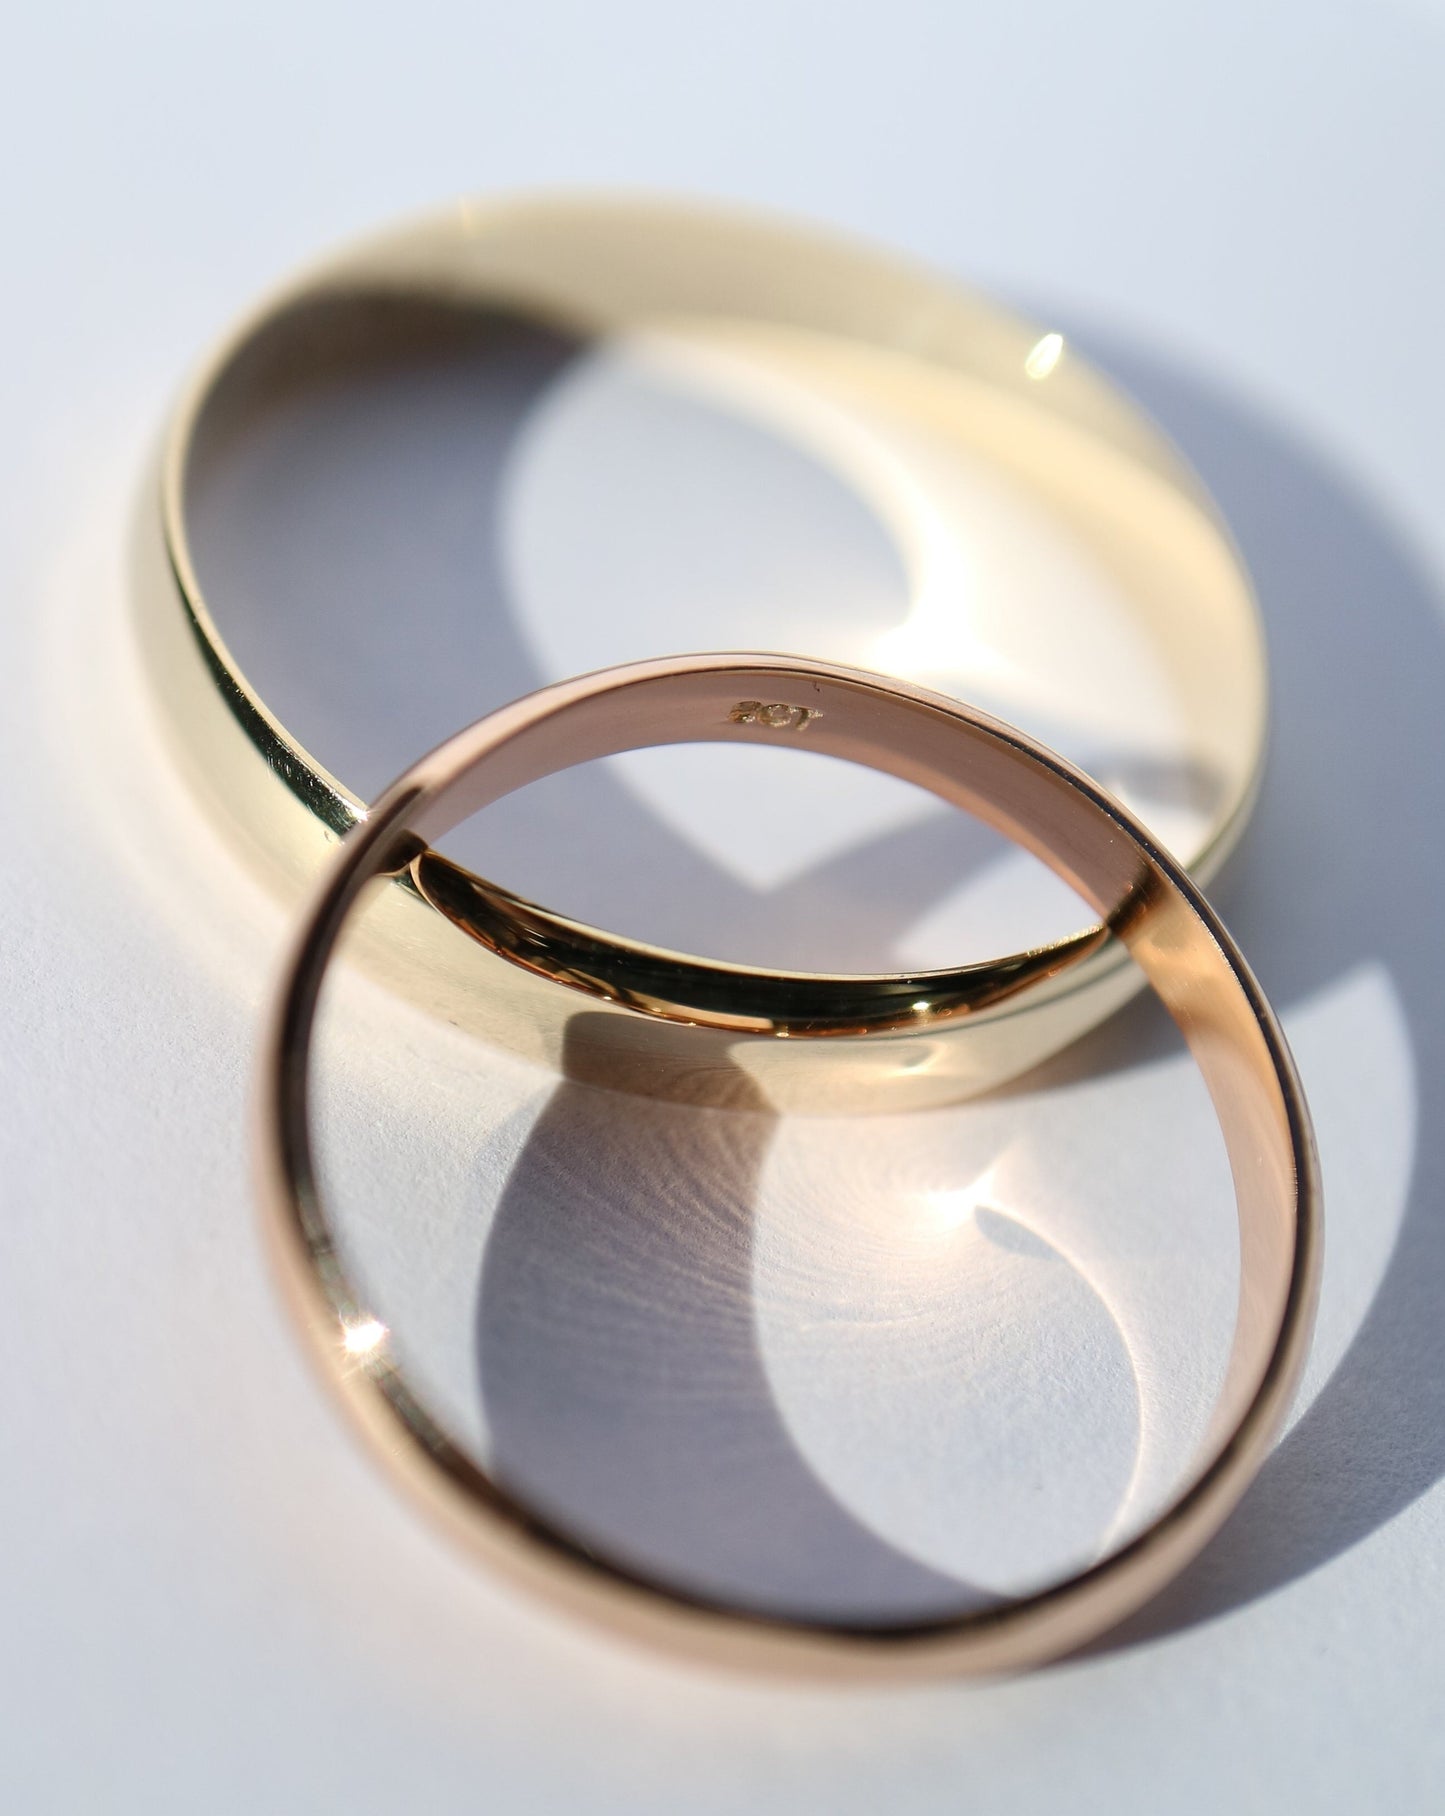 9ct gold men's wedding rings